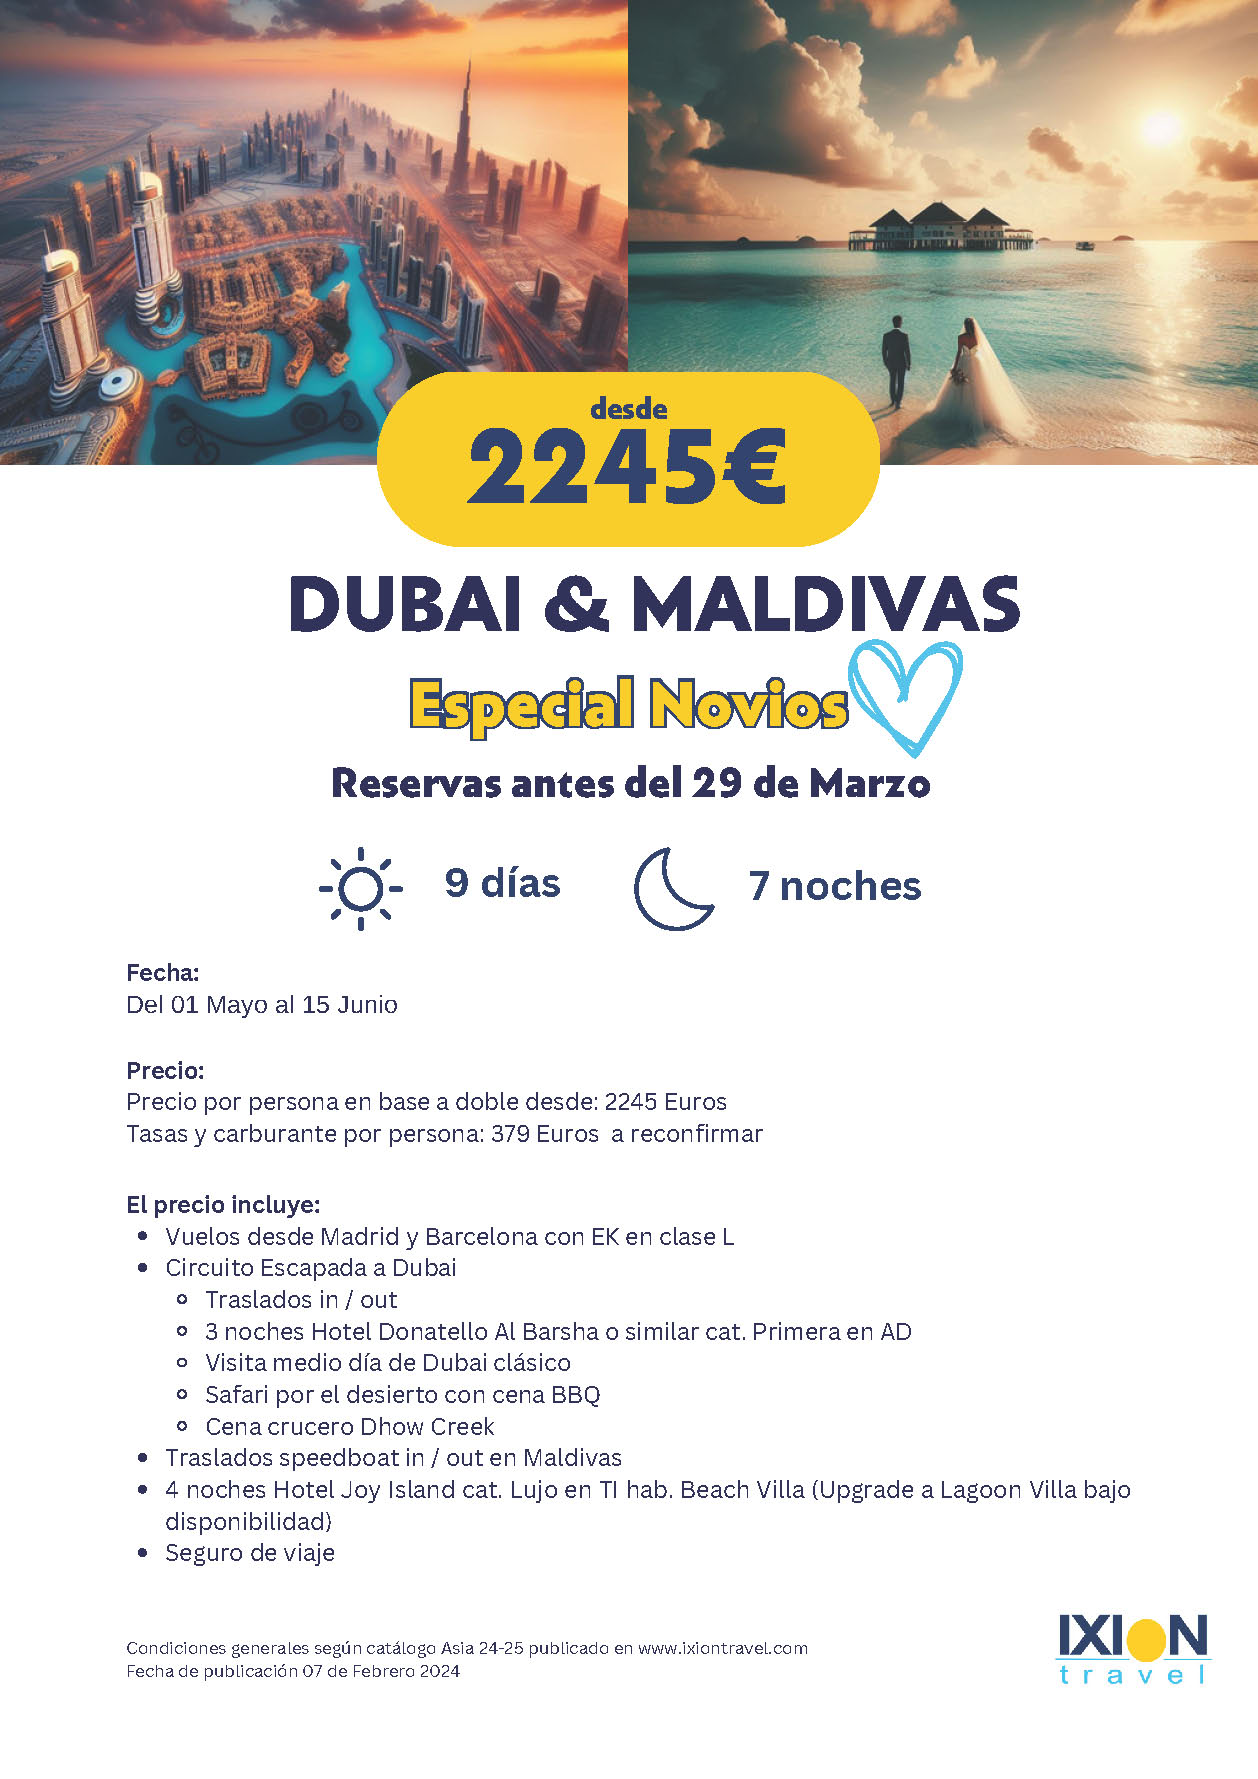 Oferta Ixion Travel Mayo Junio 2024 Dubai y Maldivas Novios 9 dias salidas desde Barcelona y Madrid vuelos Emirates